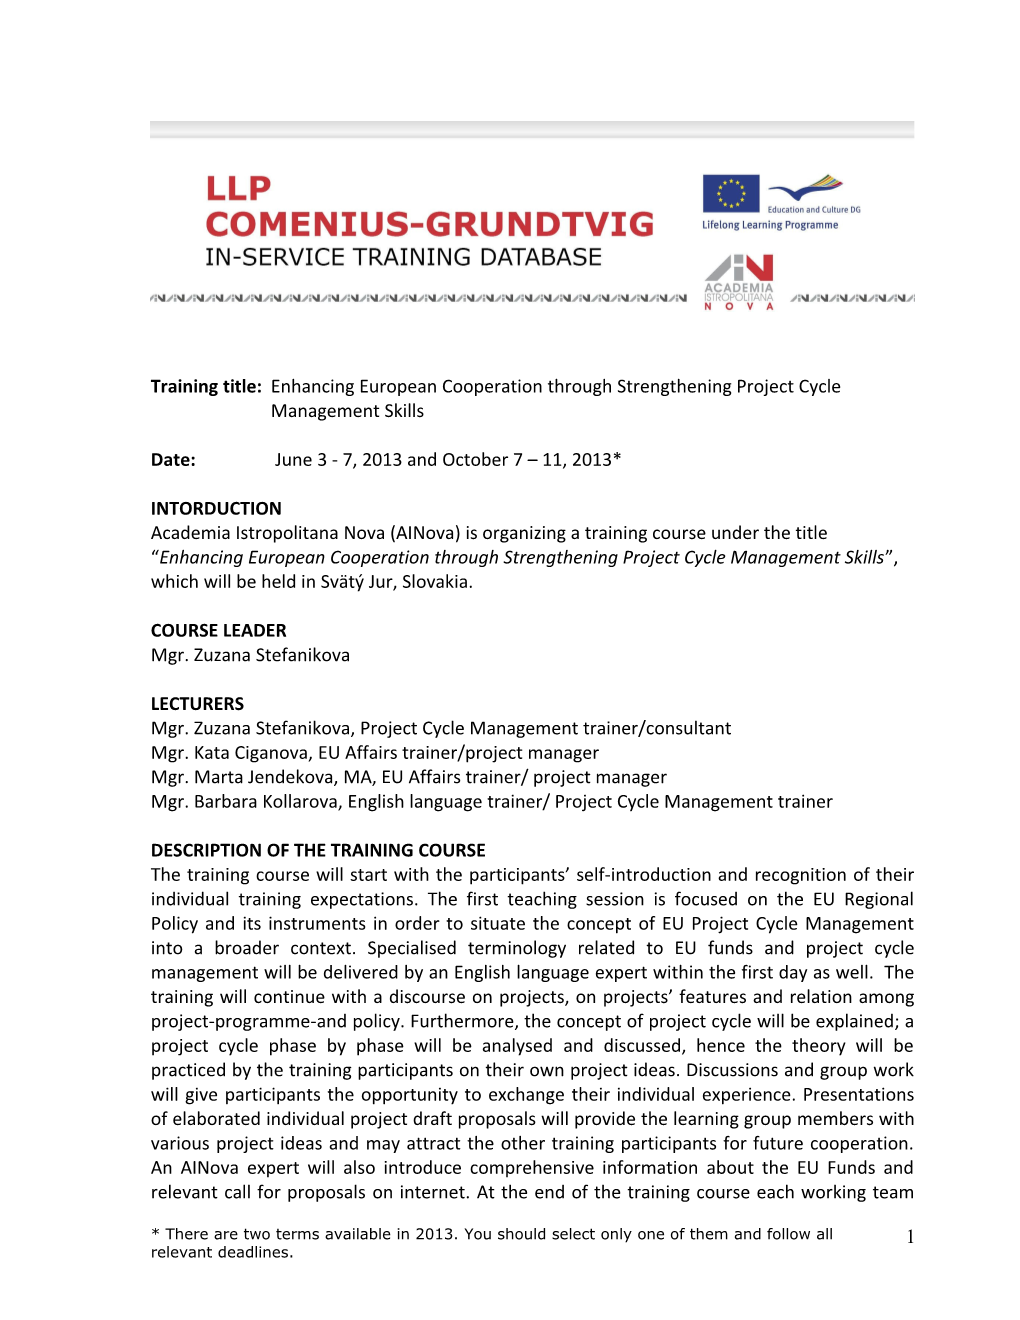 LLP-Grundtvig/Workshops